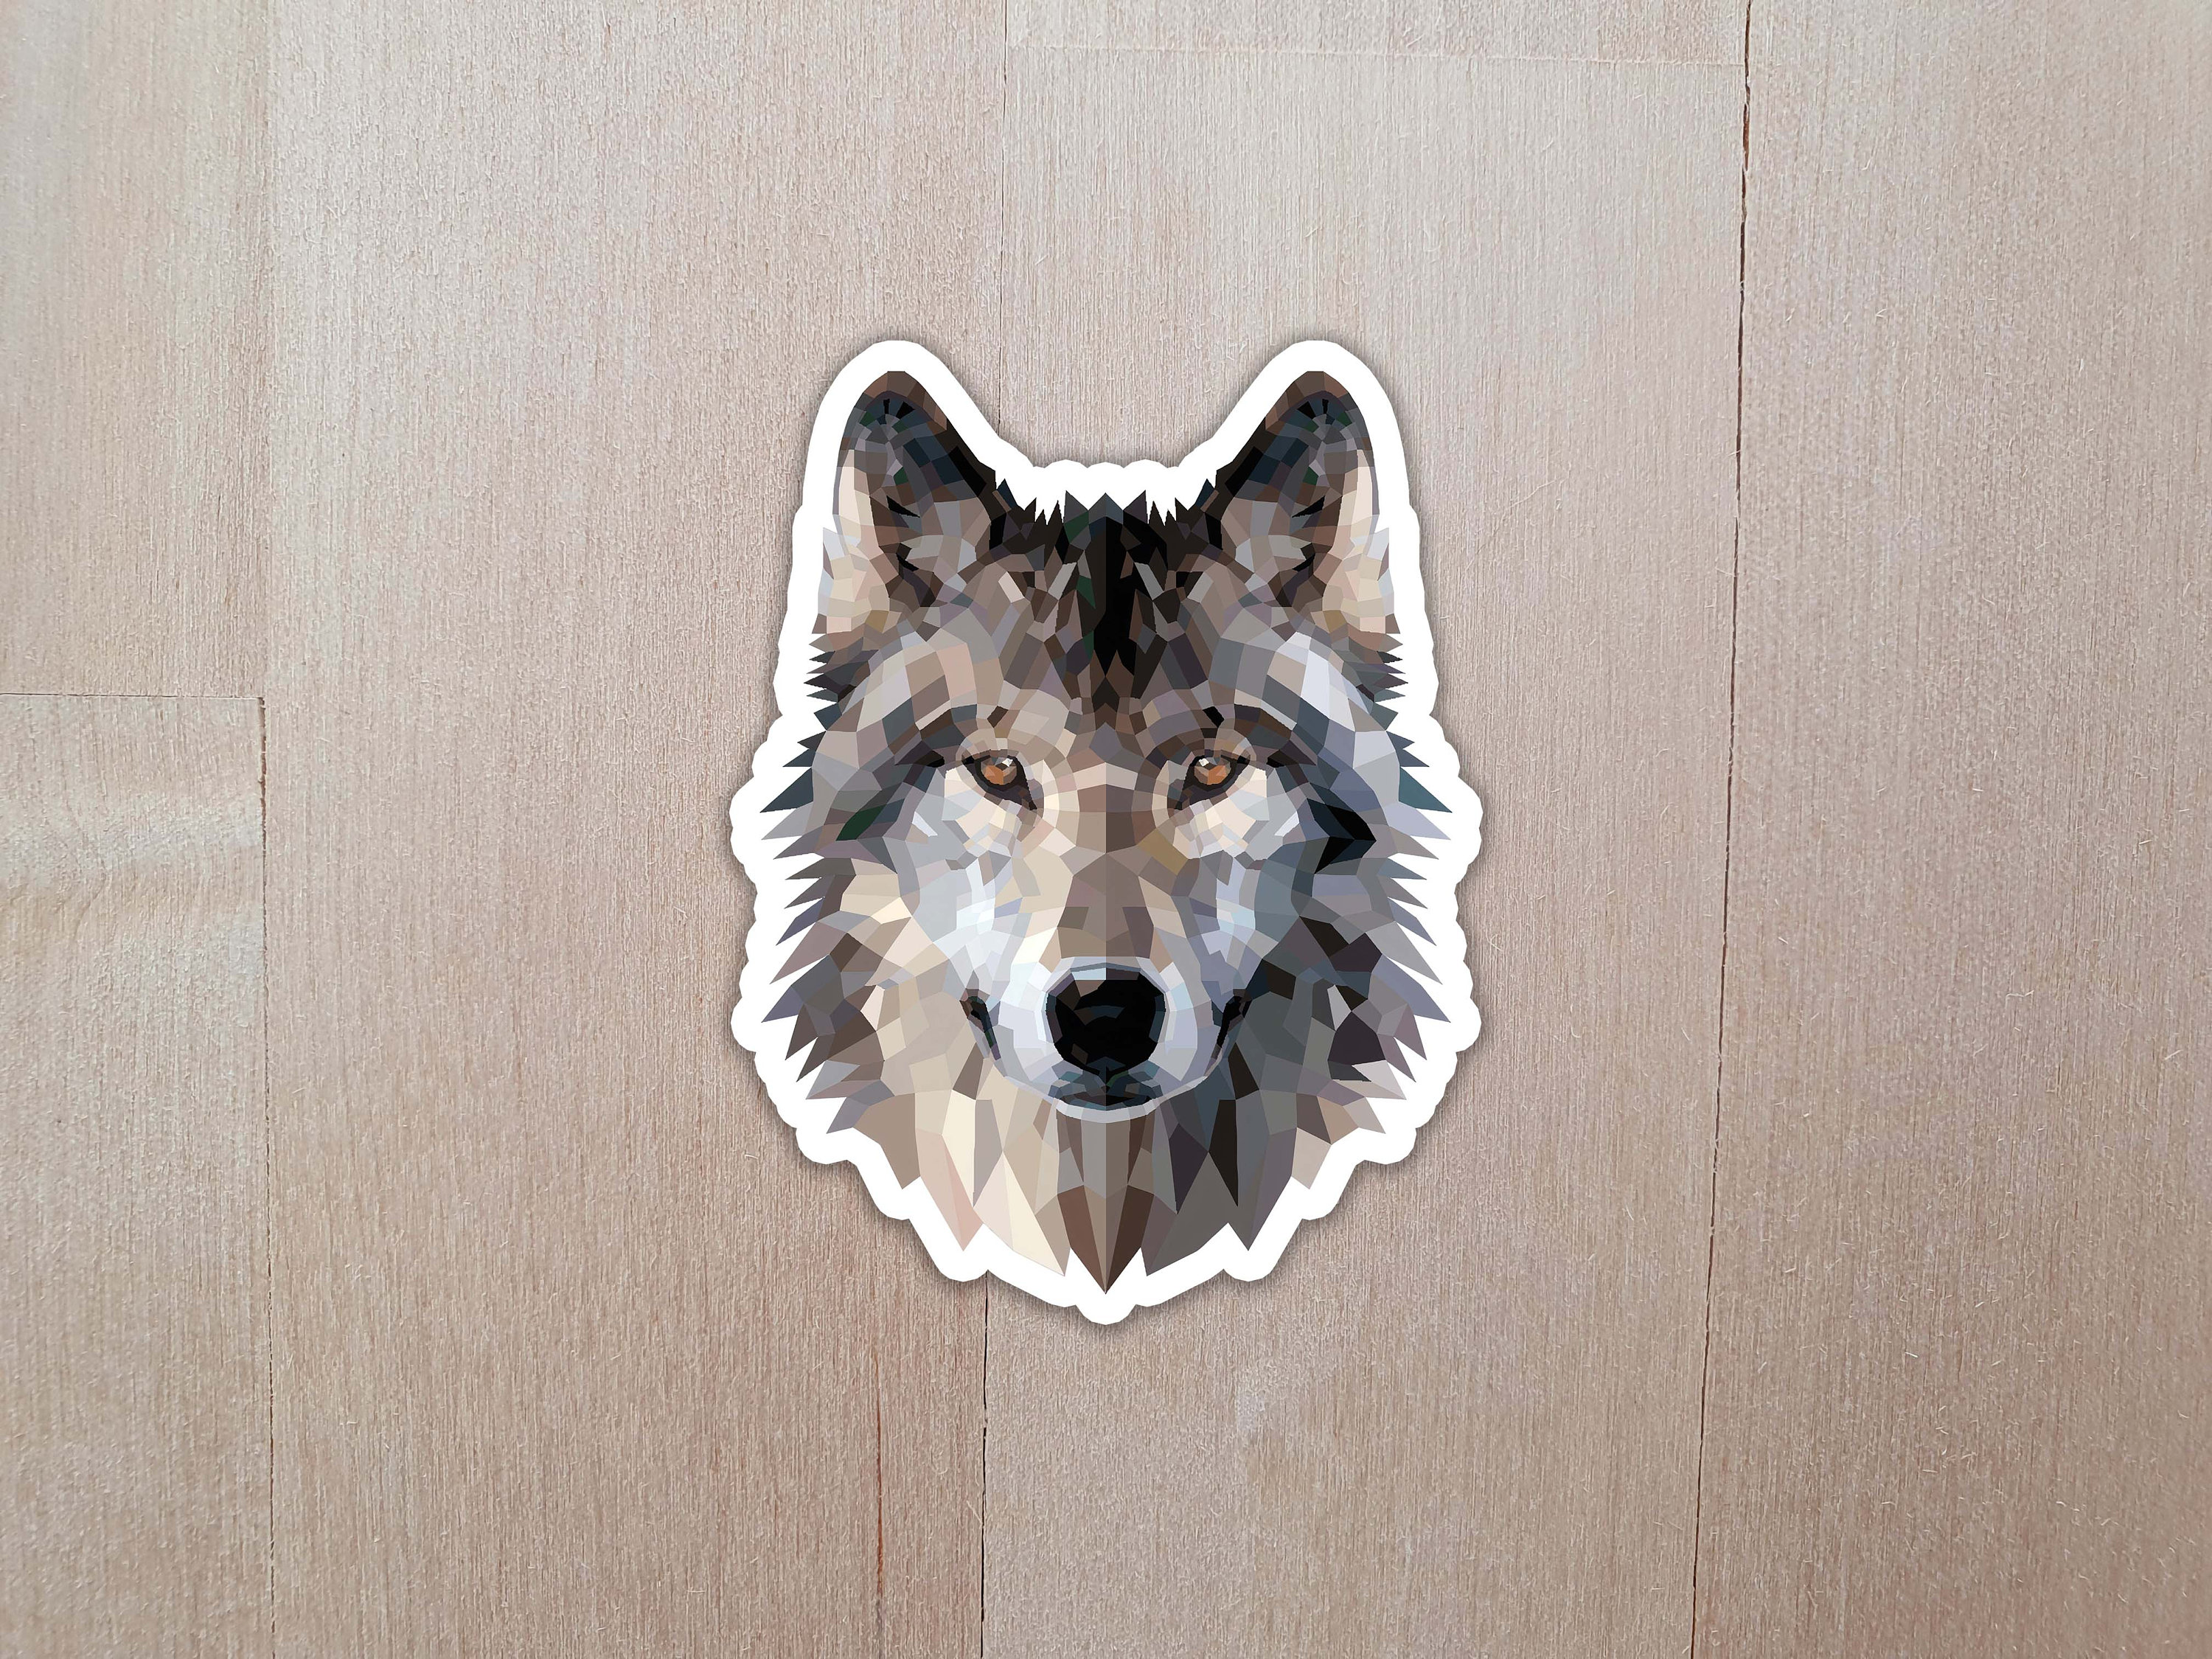 Wolf Sticker, Galaxy Sticker, Animal Sticker, Laptop Stickers